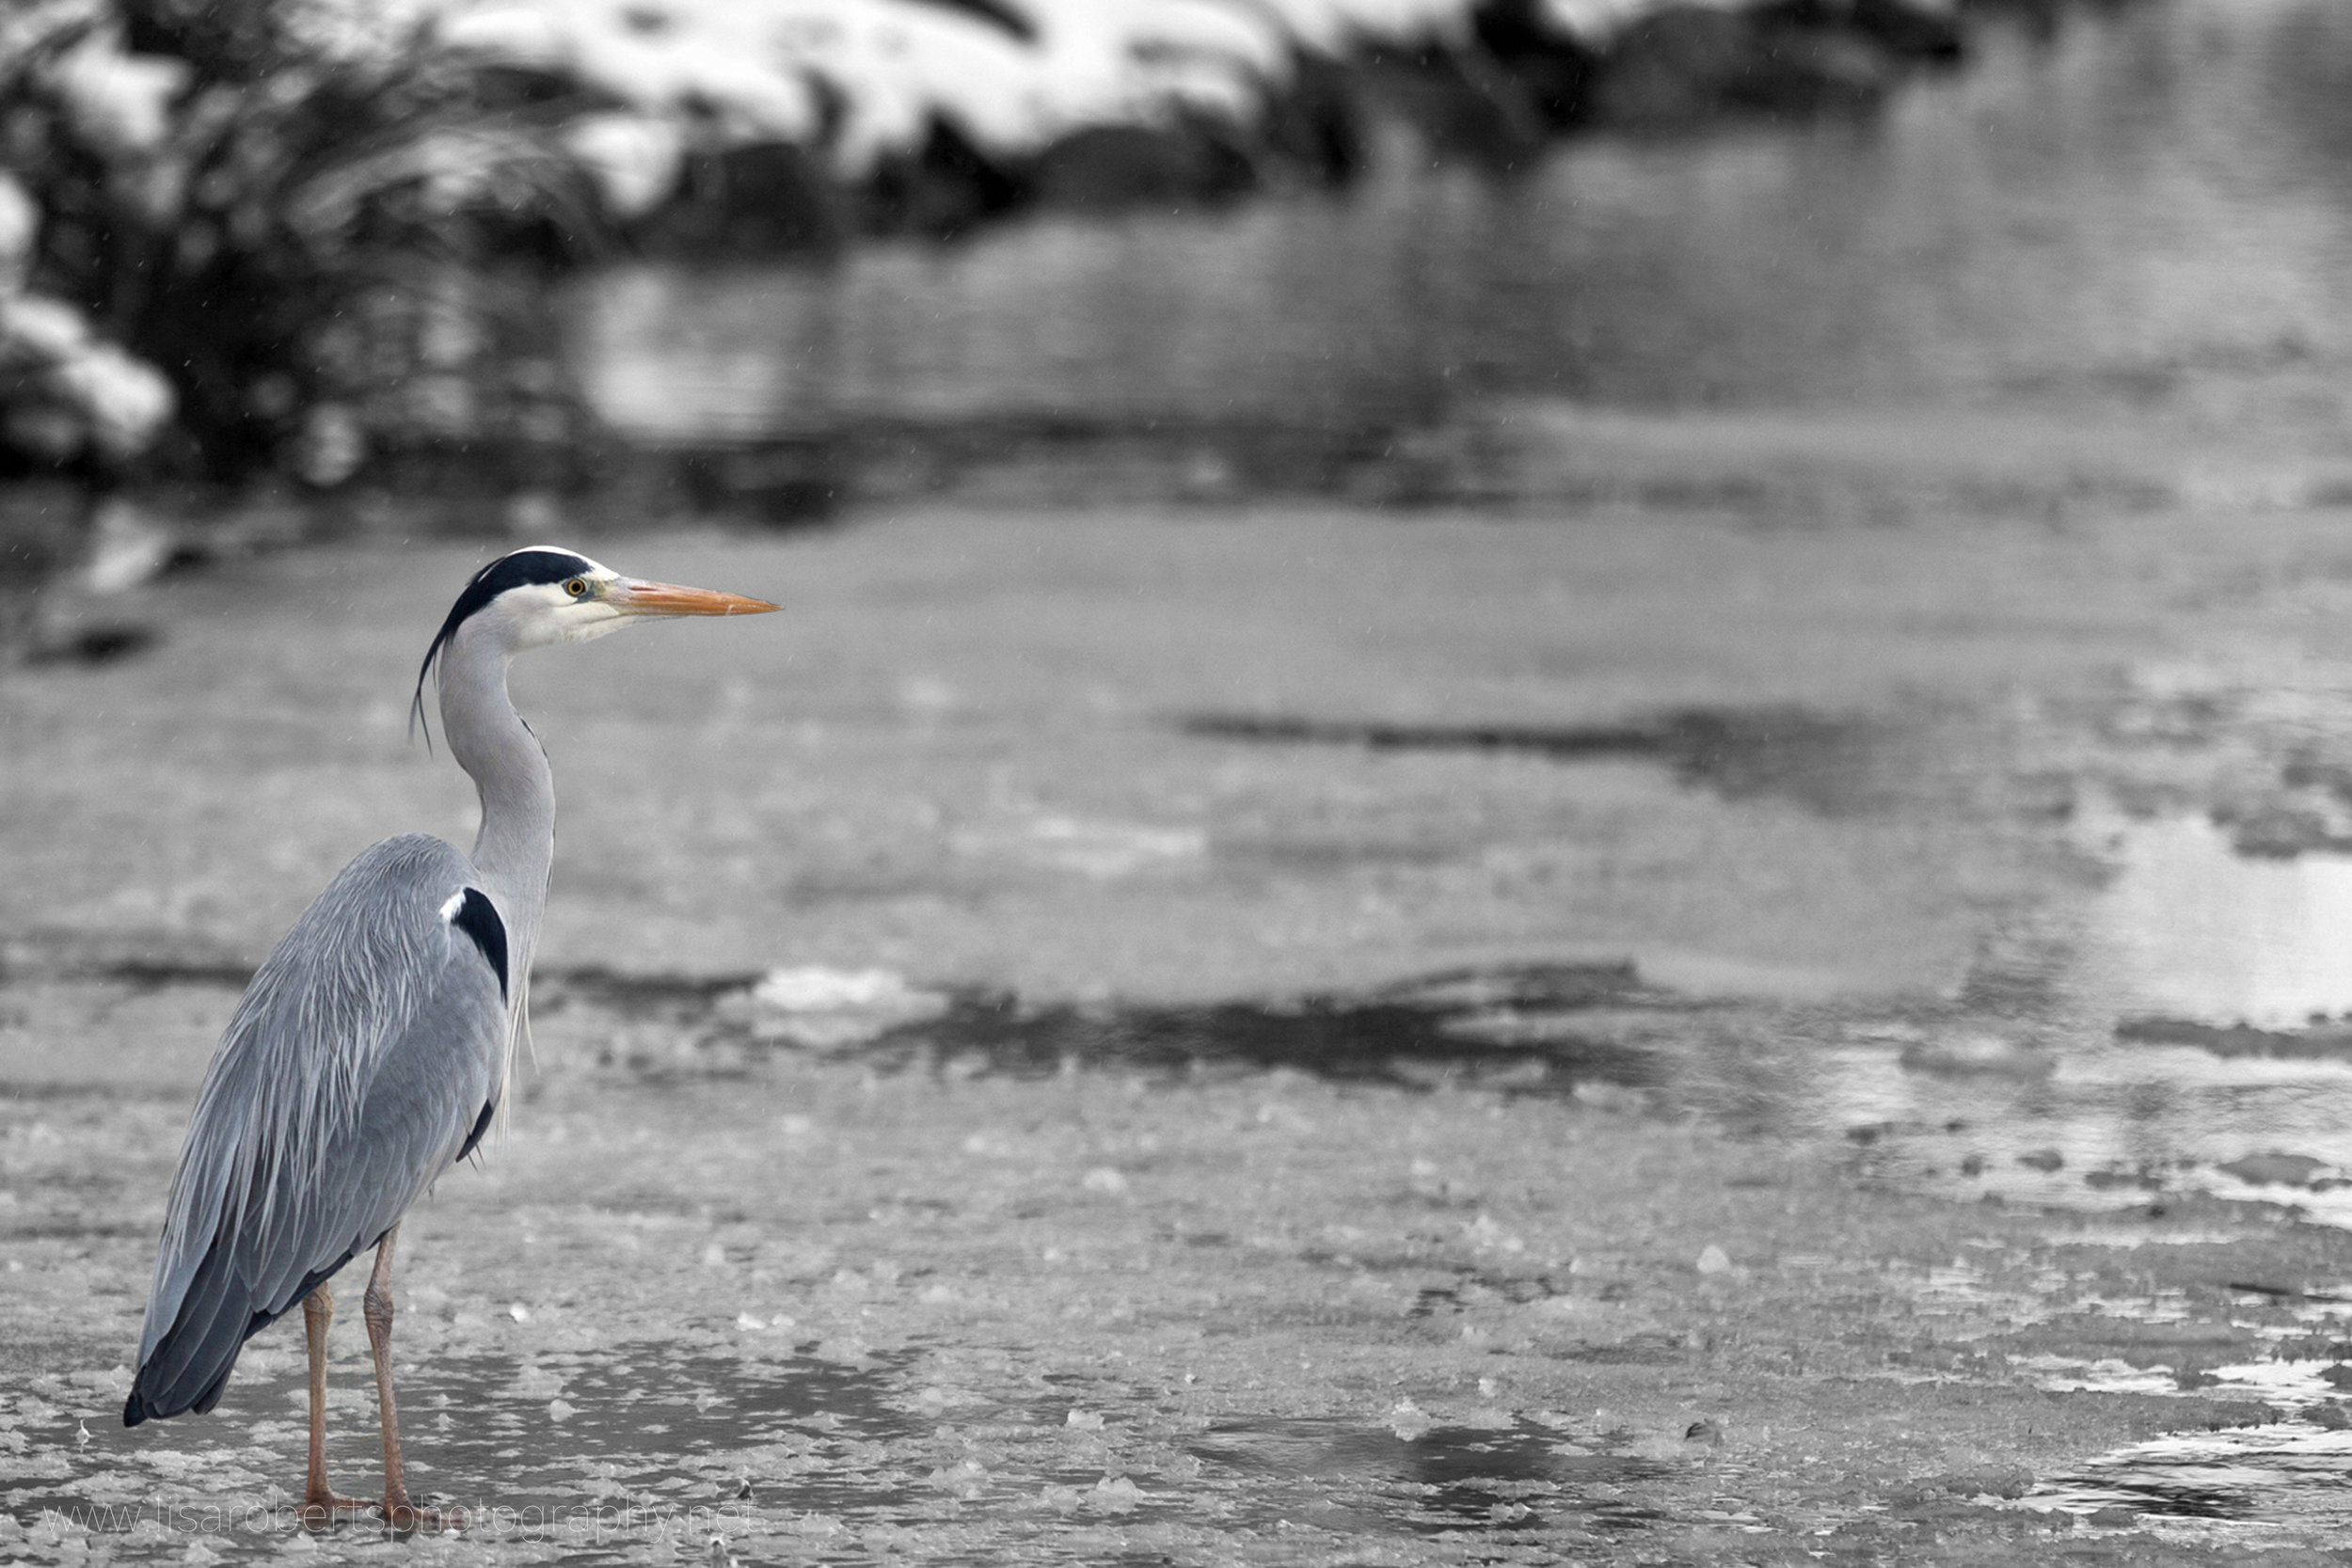  Heron on frozen pond 